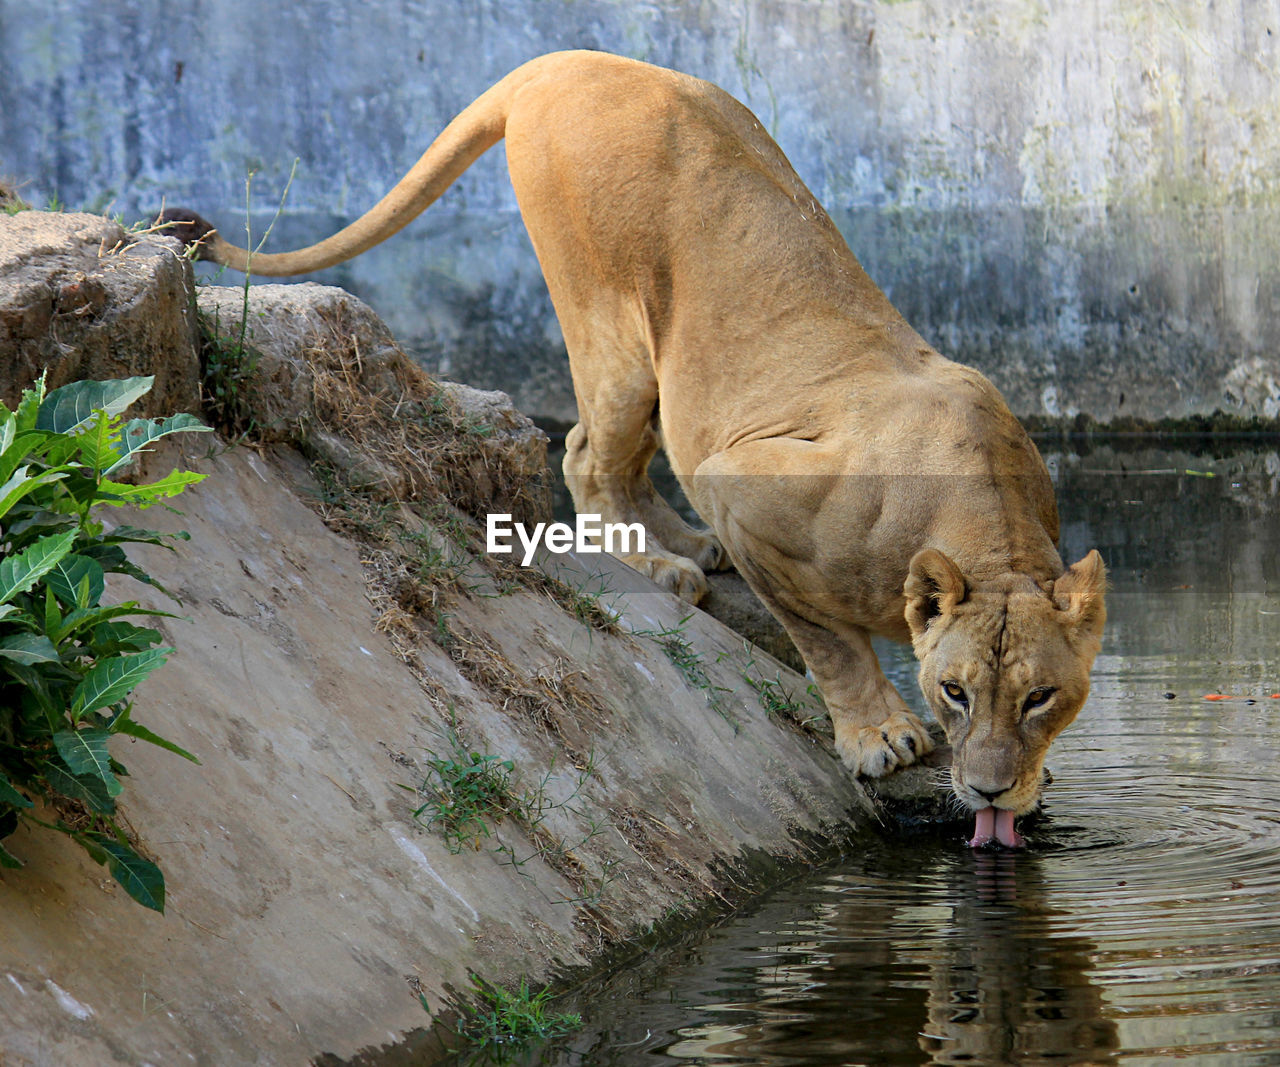 Full length of a lion drinking water serulingmas interaktive zoo banjarnegara